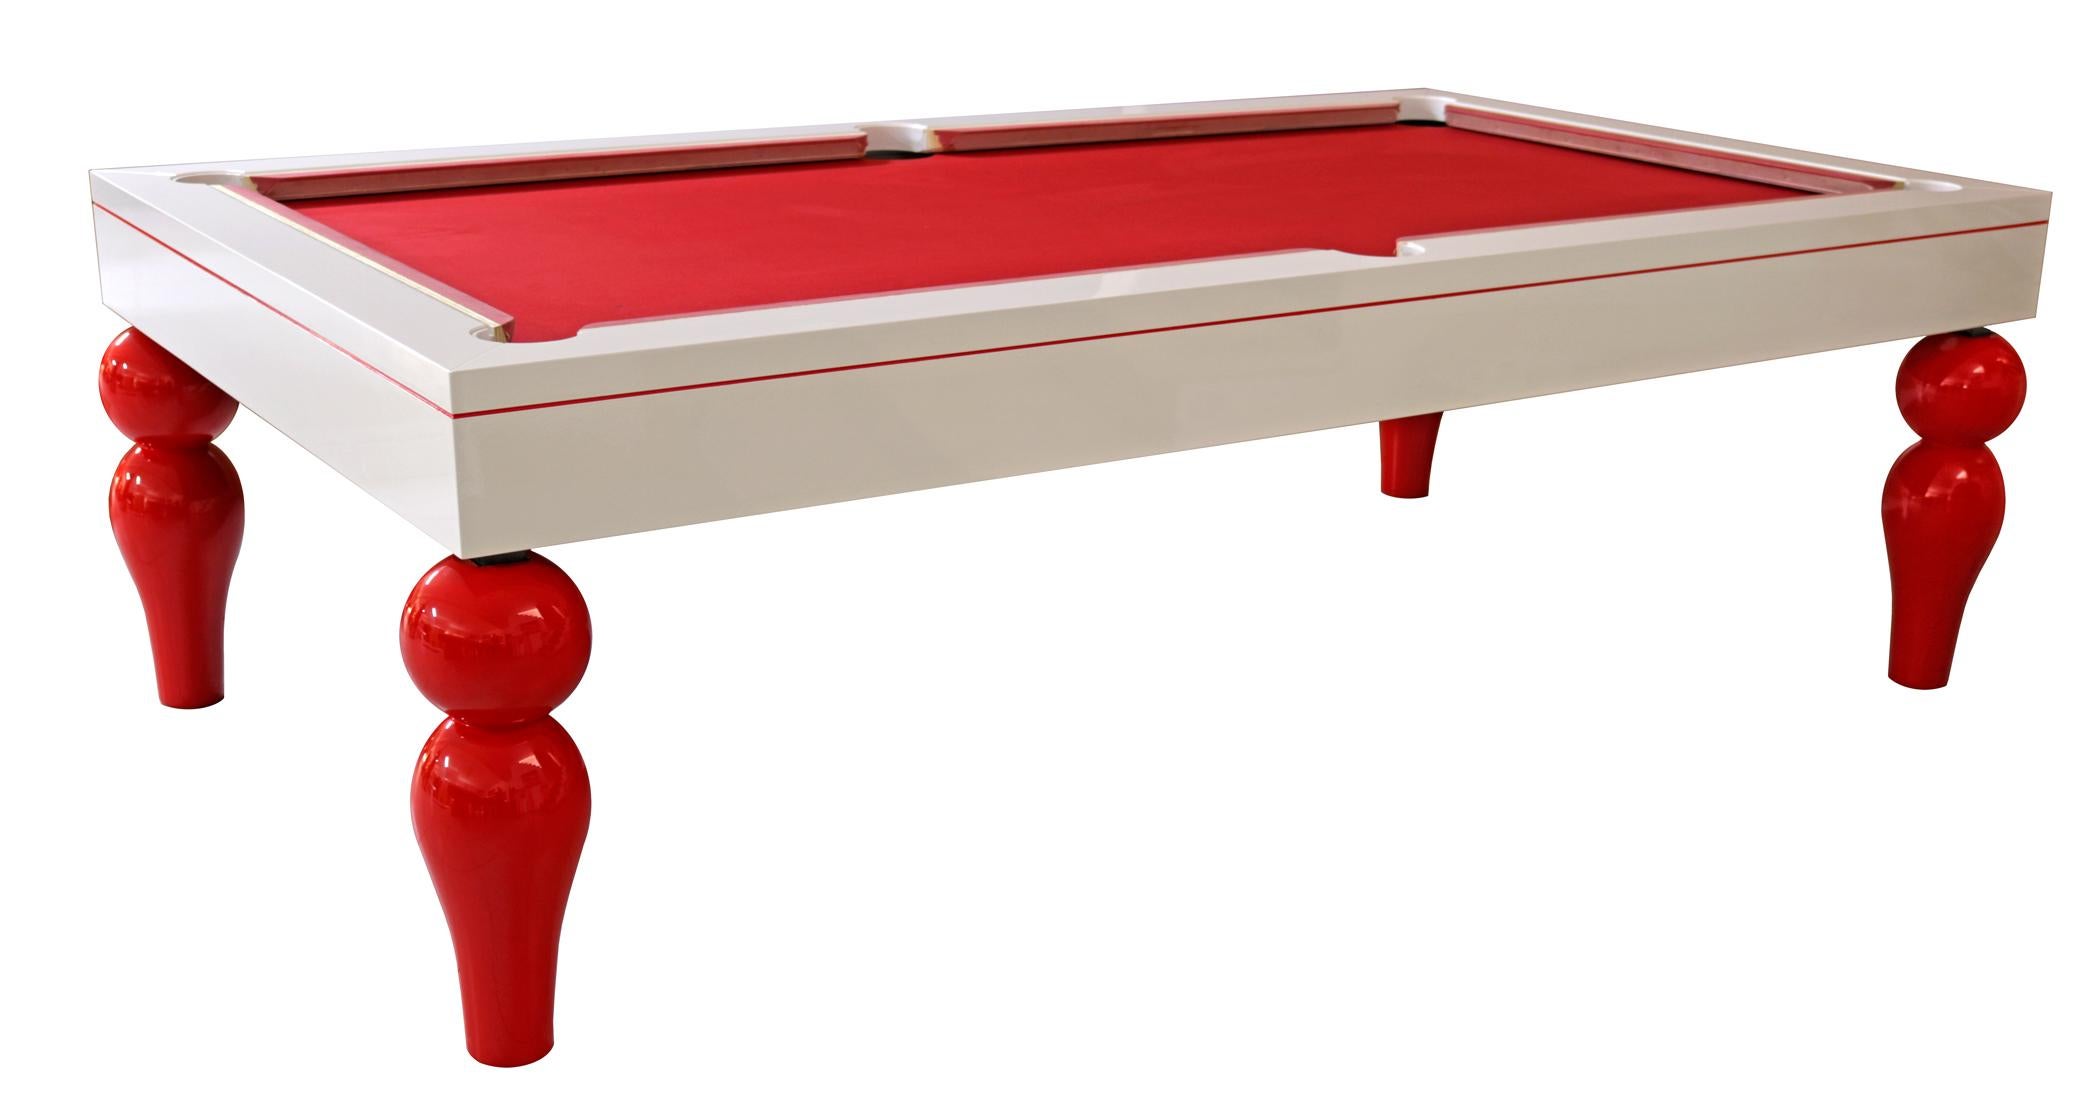 Table de salle à manger, table de billard, table de snooker POOL et table de Ping-Pong au design moderne.

Une table de billard, de snooker ou de POOL de qualité. La table de billard est livrée avec trois plateaux amovibles. Les feuilles